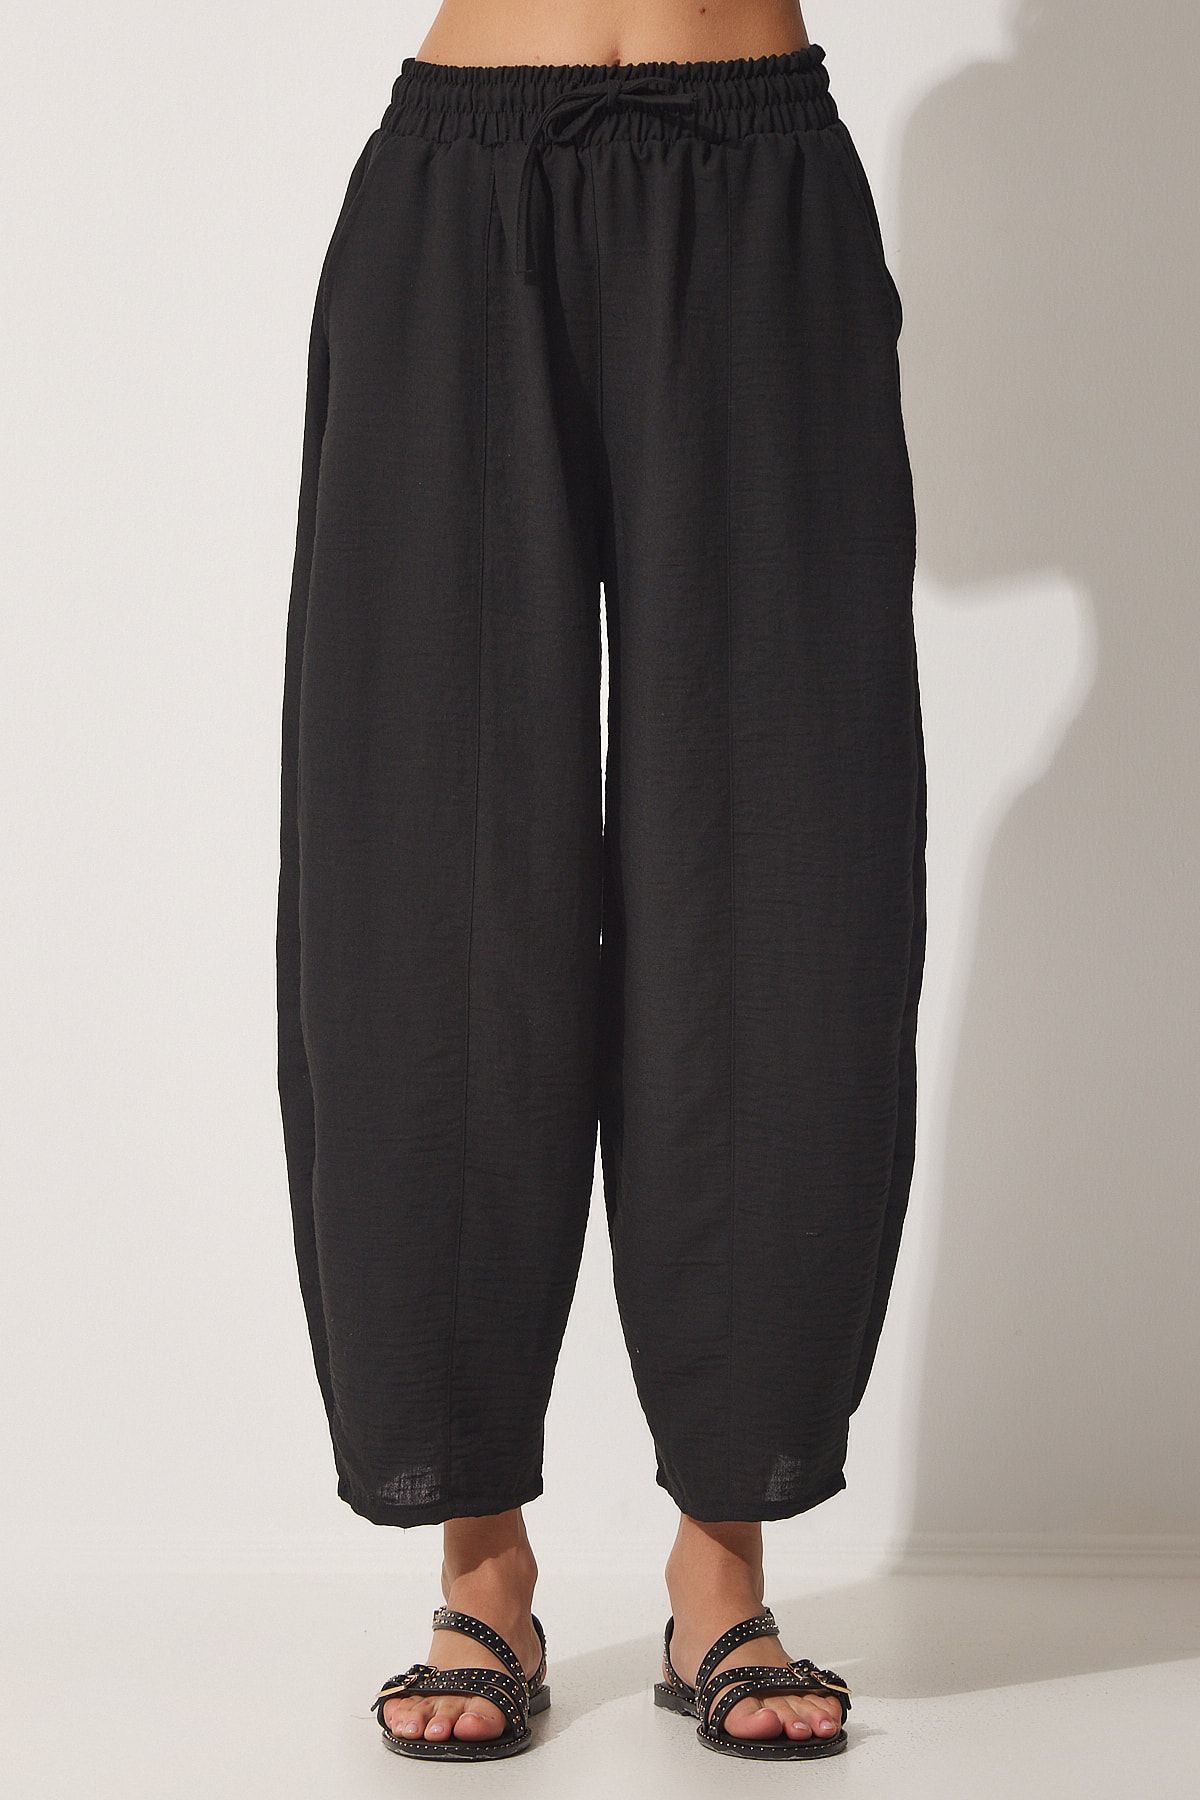 A Two-piece Set of Asymmetric Linen Shirt & Linen Harem Pants